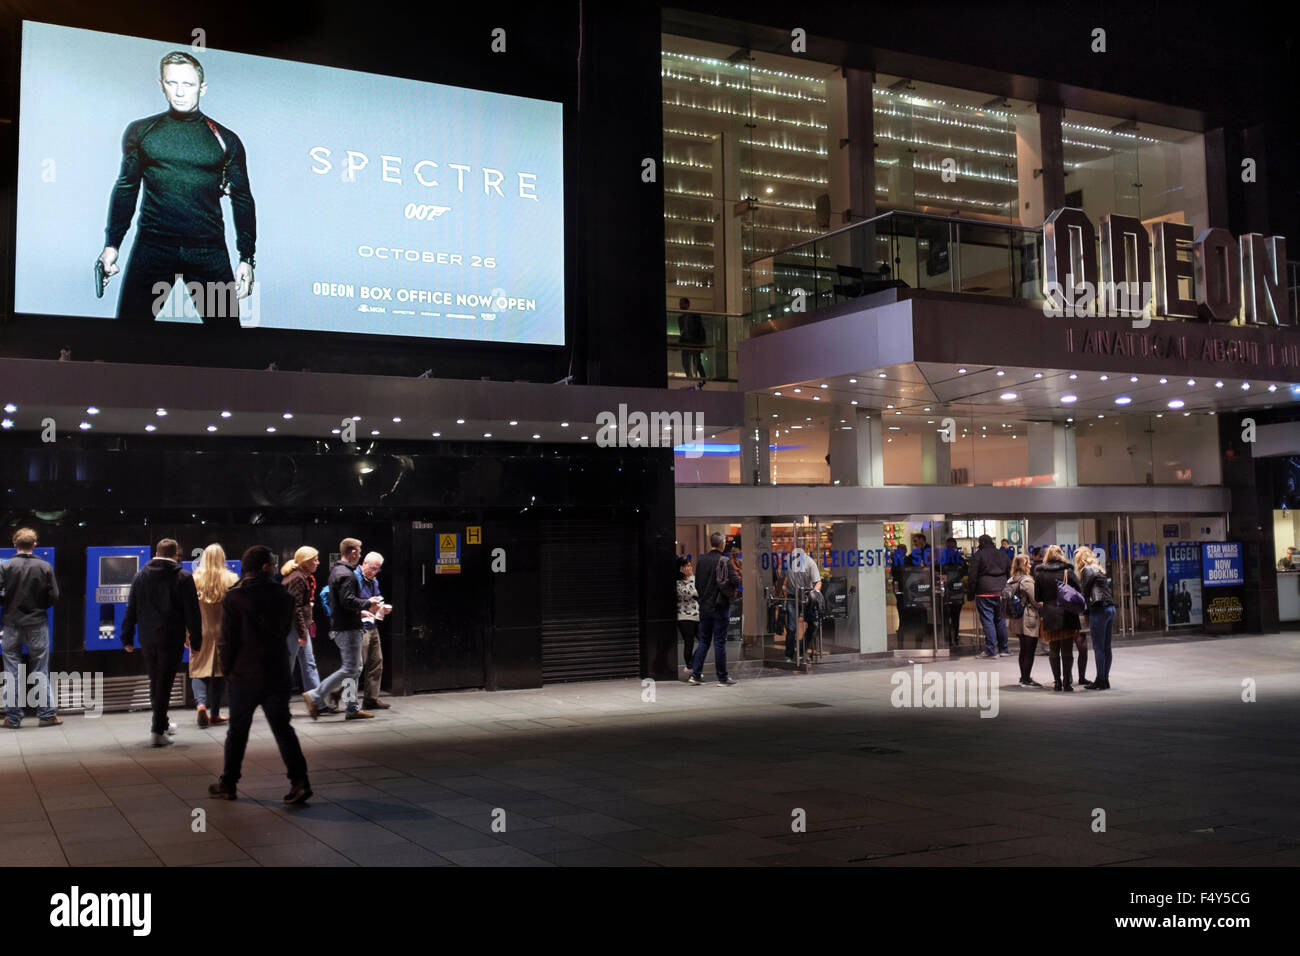 Odeon Kino, Leicester Square, London Werbung die Freisetzung von James Bond-Film mit Daniel Craig im November 2015 Spectre. Stockfoto